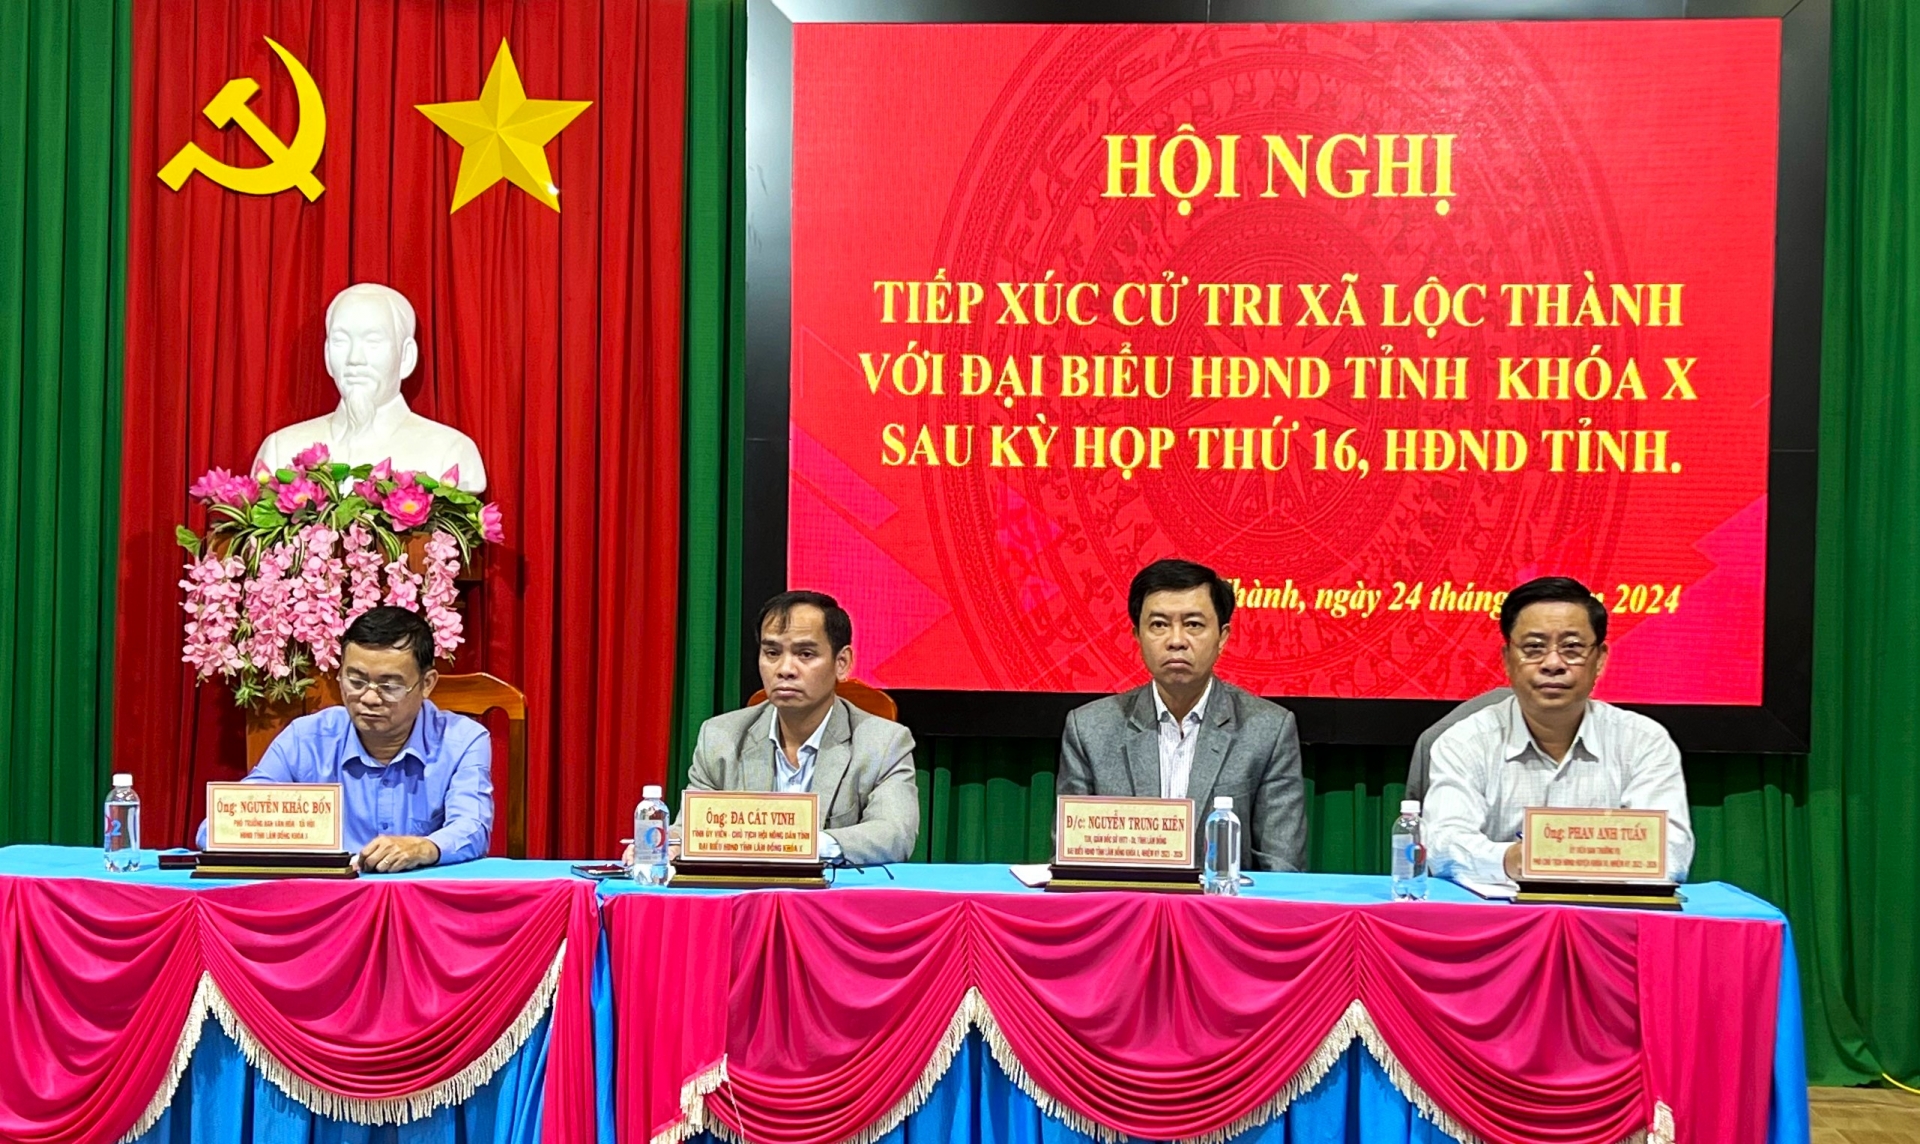 Tổ đại biểu HĐND tỉnh Lâm Đồng tiếp xúc với cử tri xã Lộc Thành (huyện Bảo Lâm) sau Kỳ họp thứ 16 HĐND tỉnh Lâm Đồng